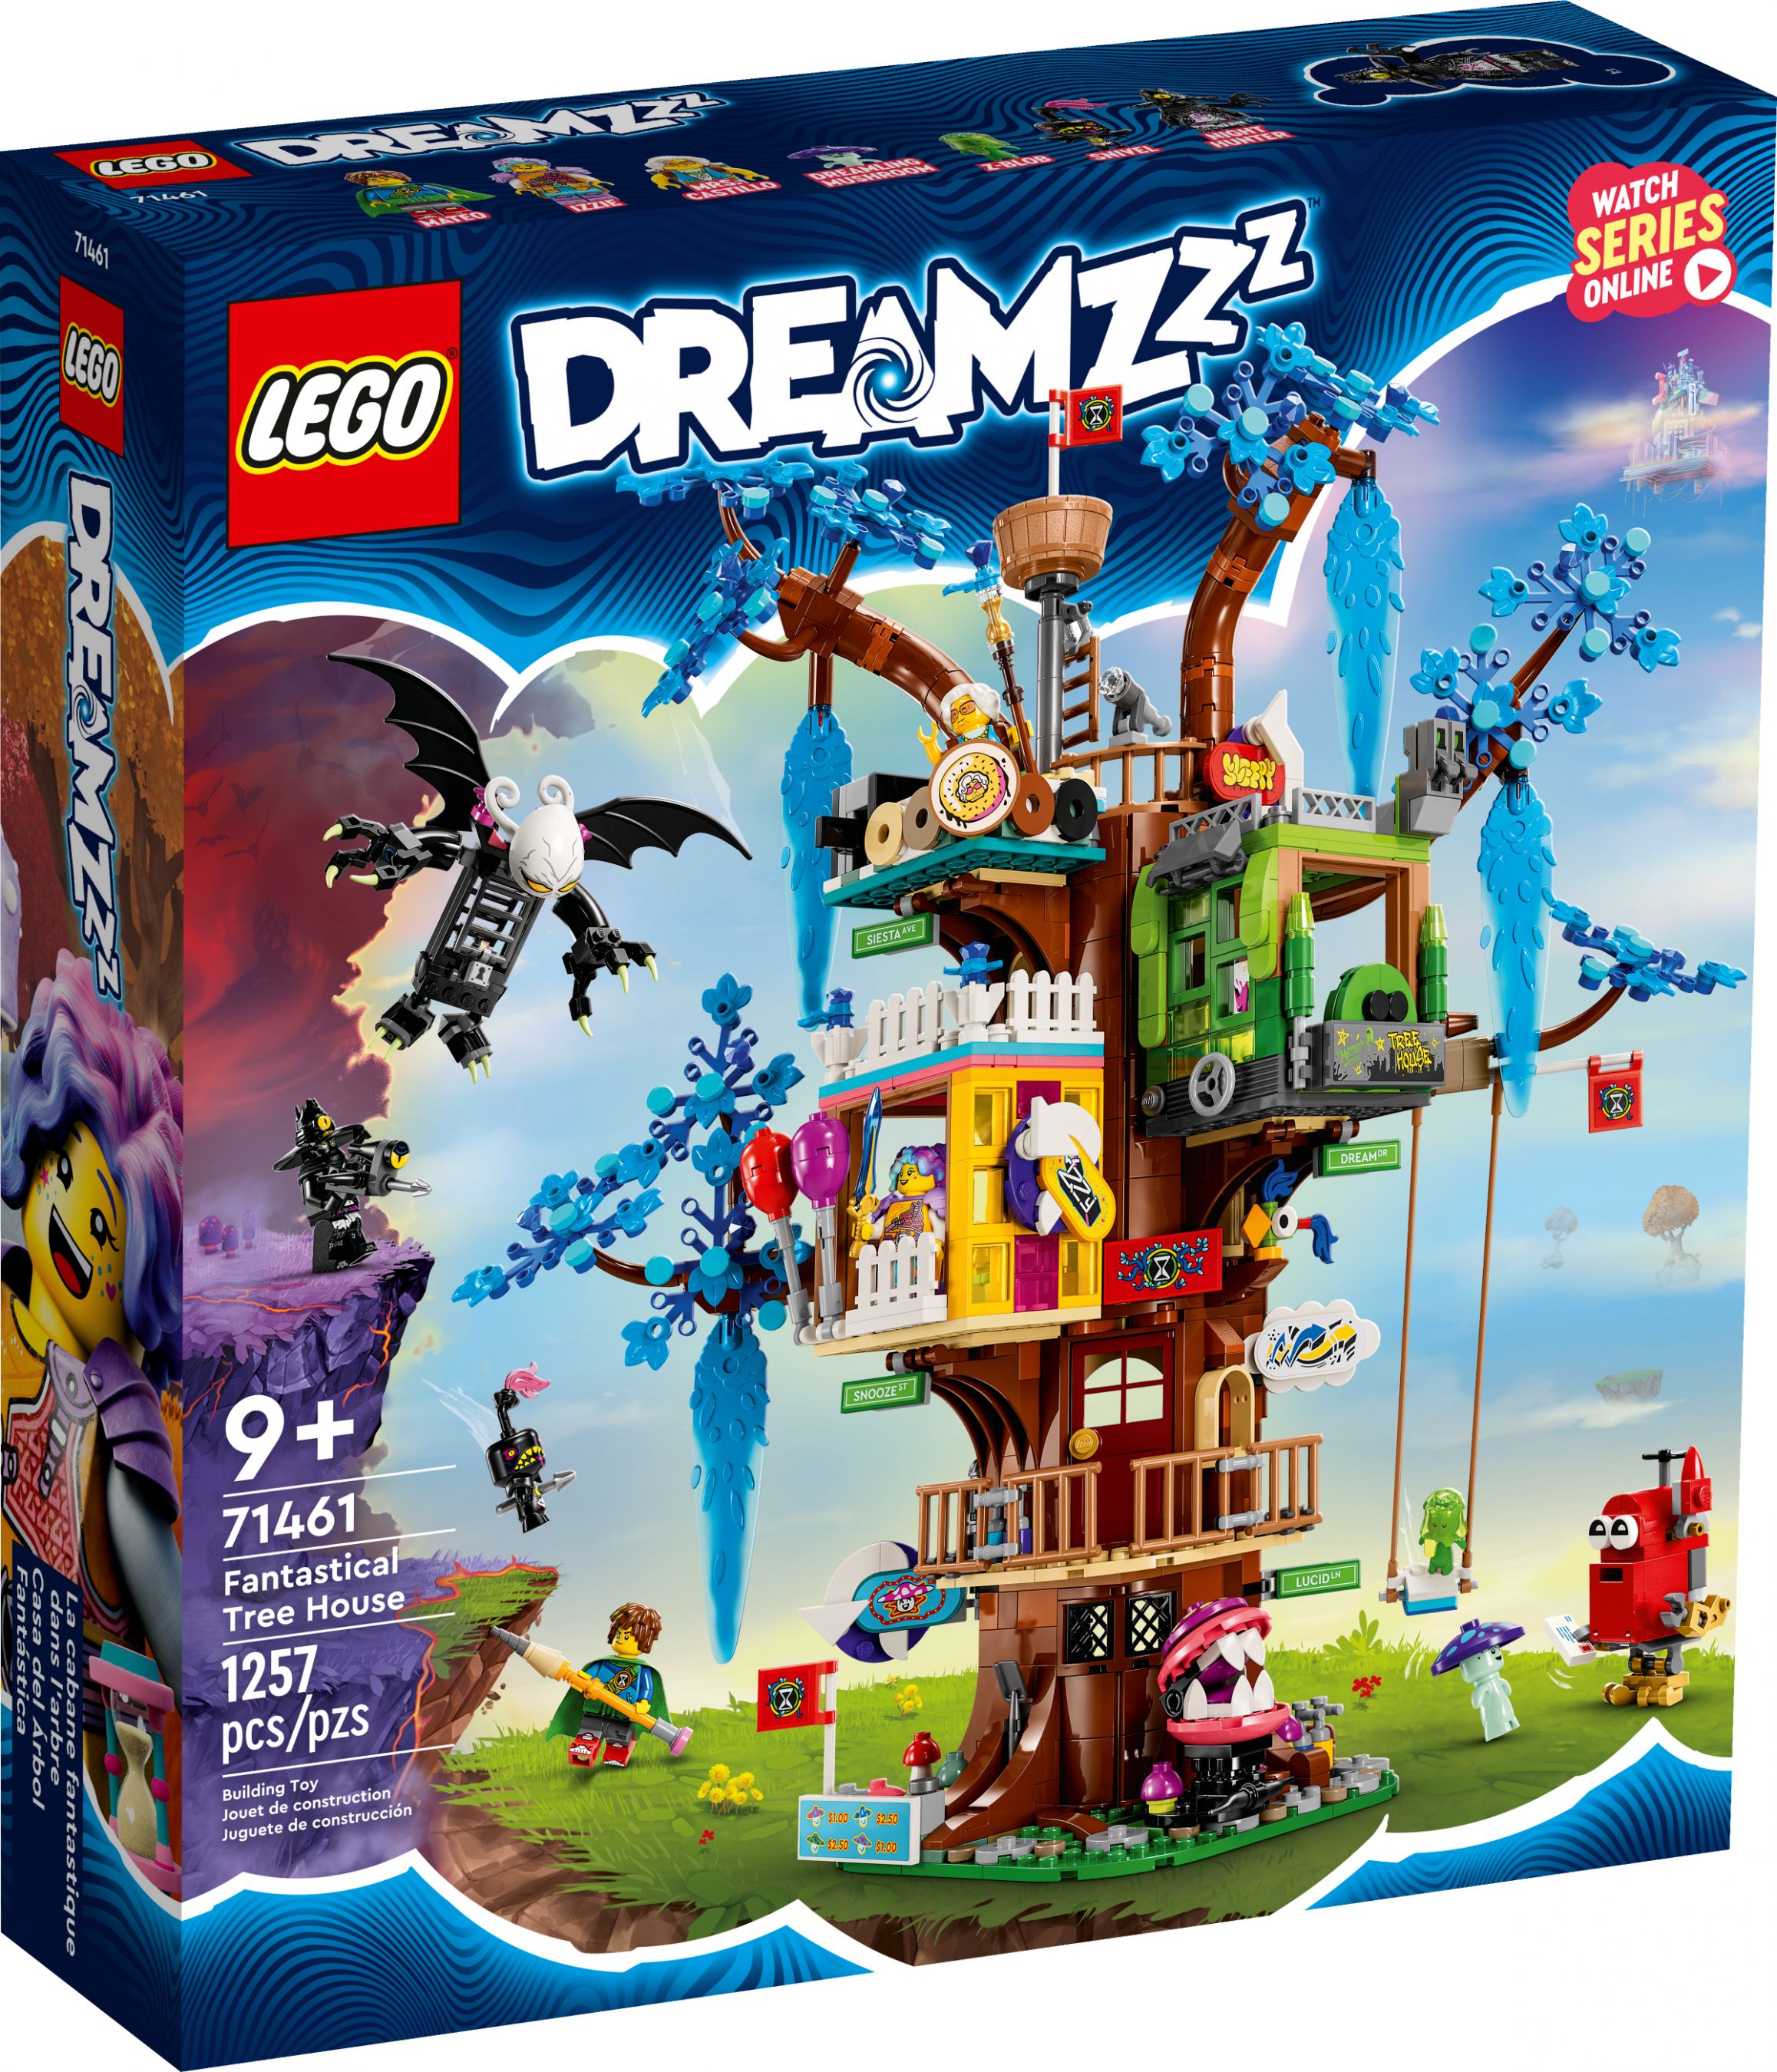 LEGO Dreamzzz 71461 Fantastisches Baumhaus LEGO_71461_alt1.jpg